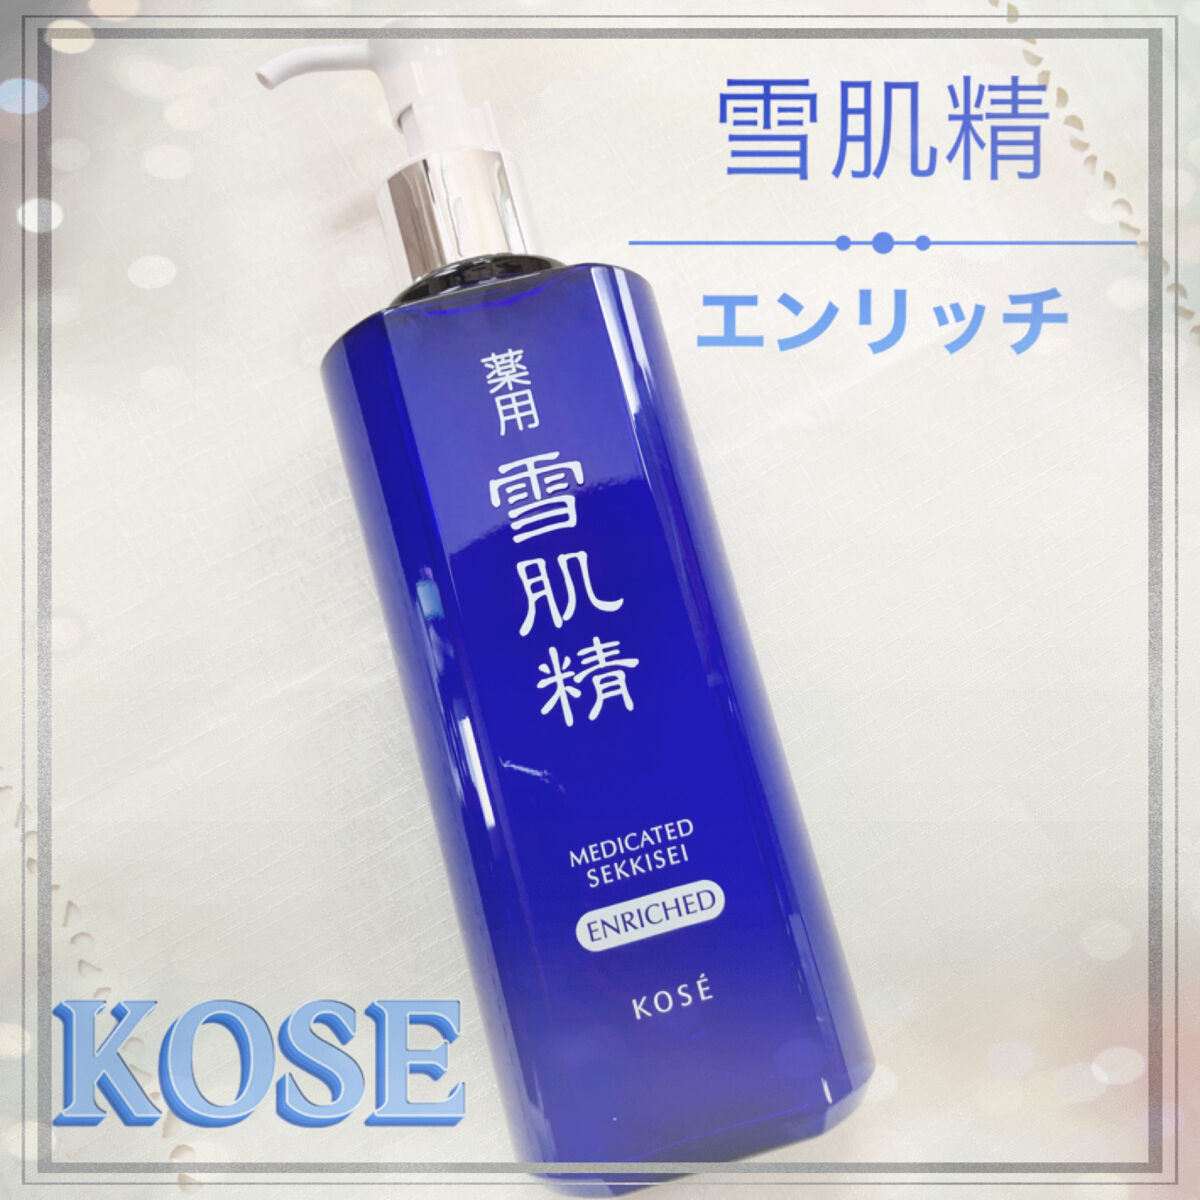 薬用 コーセー KOSE 化粧水 雪肌精 エンリッチ しっとりスキンケア/基礎化粧品